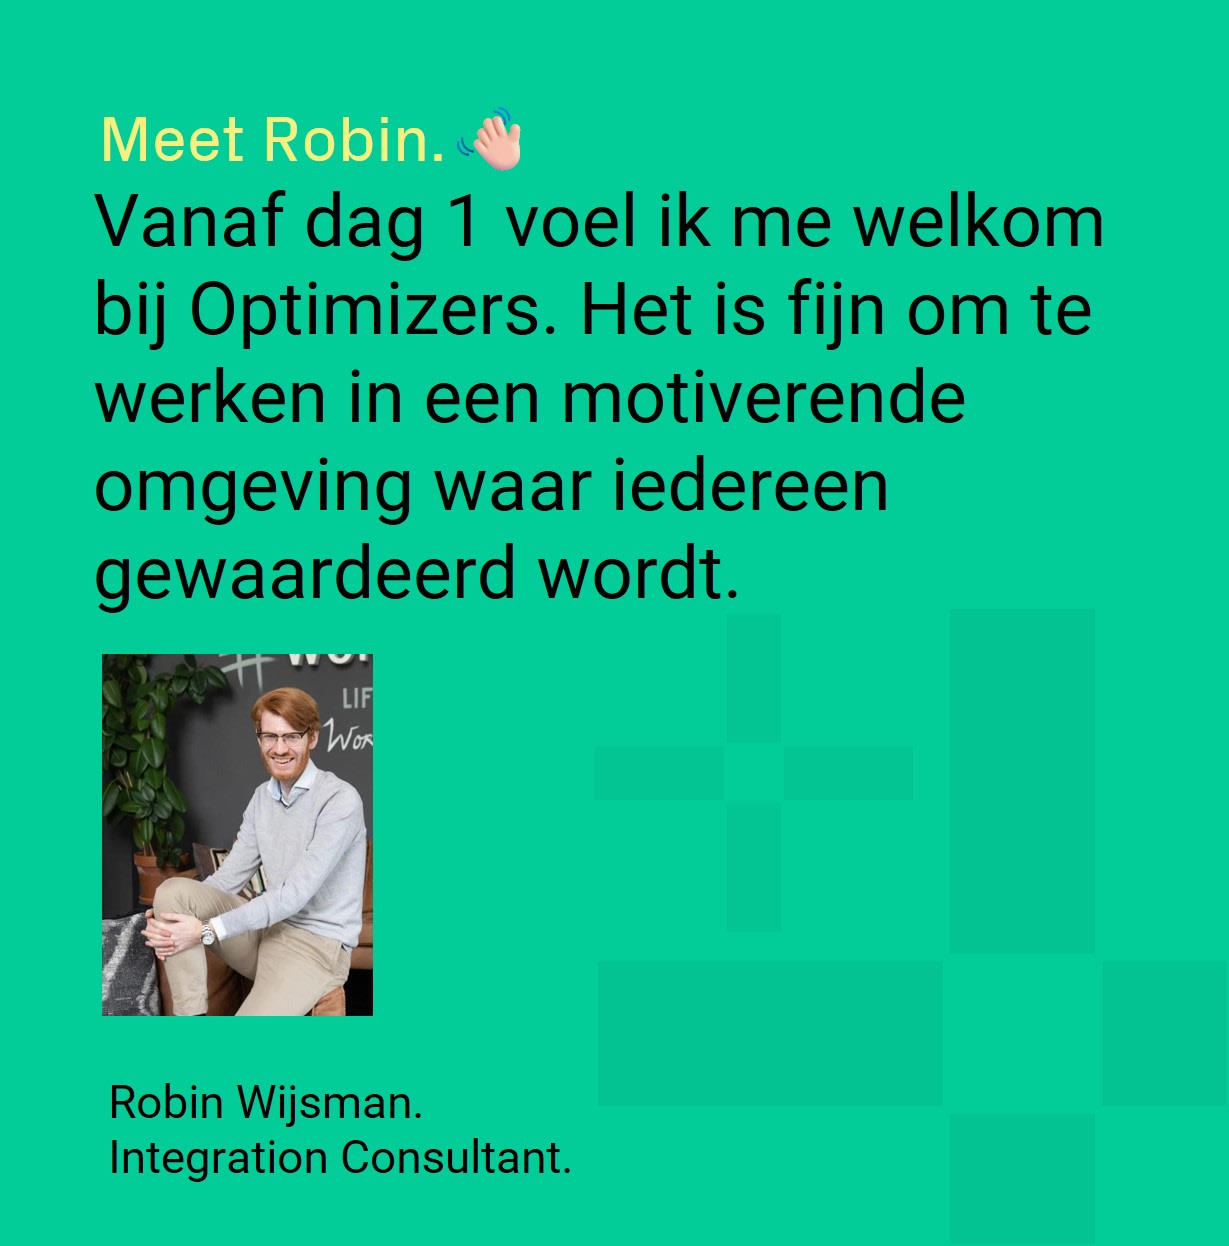 Robin Wijsman - Integration Consultant verteld over werken bij Optimizers. Vanaf dag 1 voel ik me welkom bij Optimizers. Het is fijn om te werken in een motiverende omgeving waar iedereen gewaardeerd wordt.